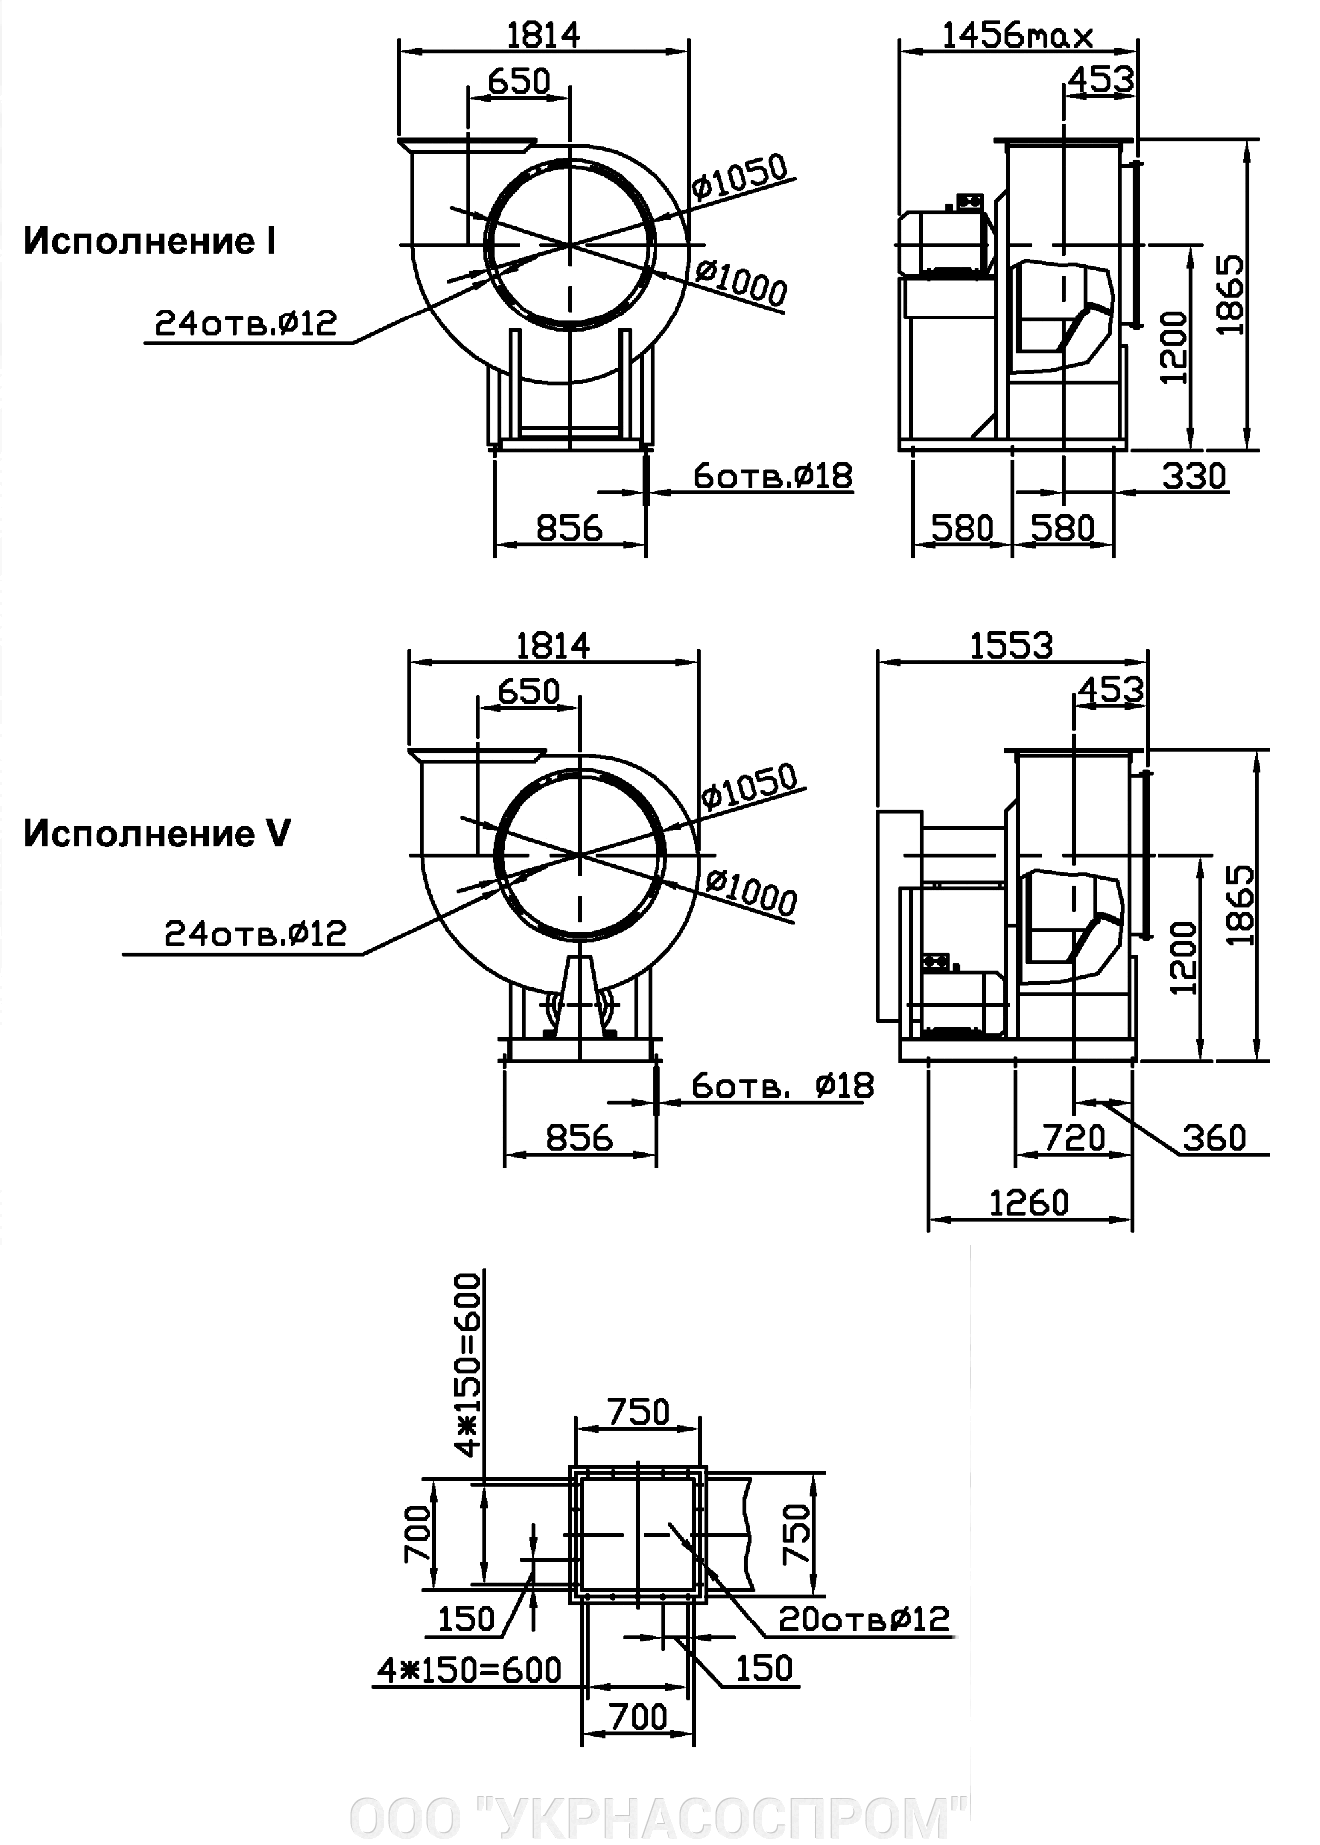 Вентилятор ВЦ 4-75 №10 15 кВт 1000 об/мин